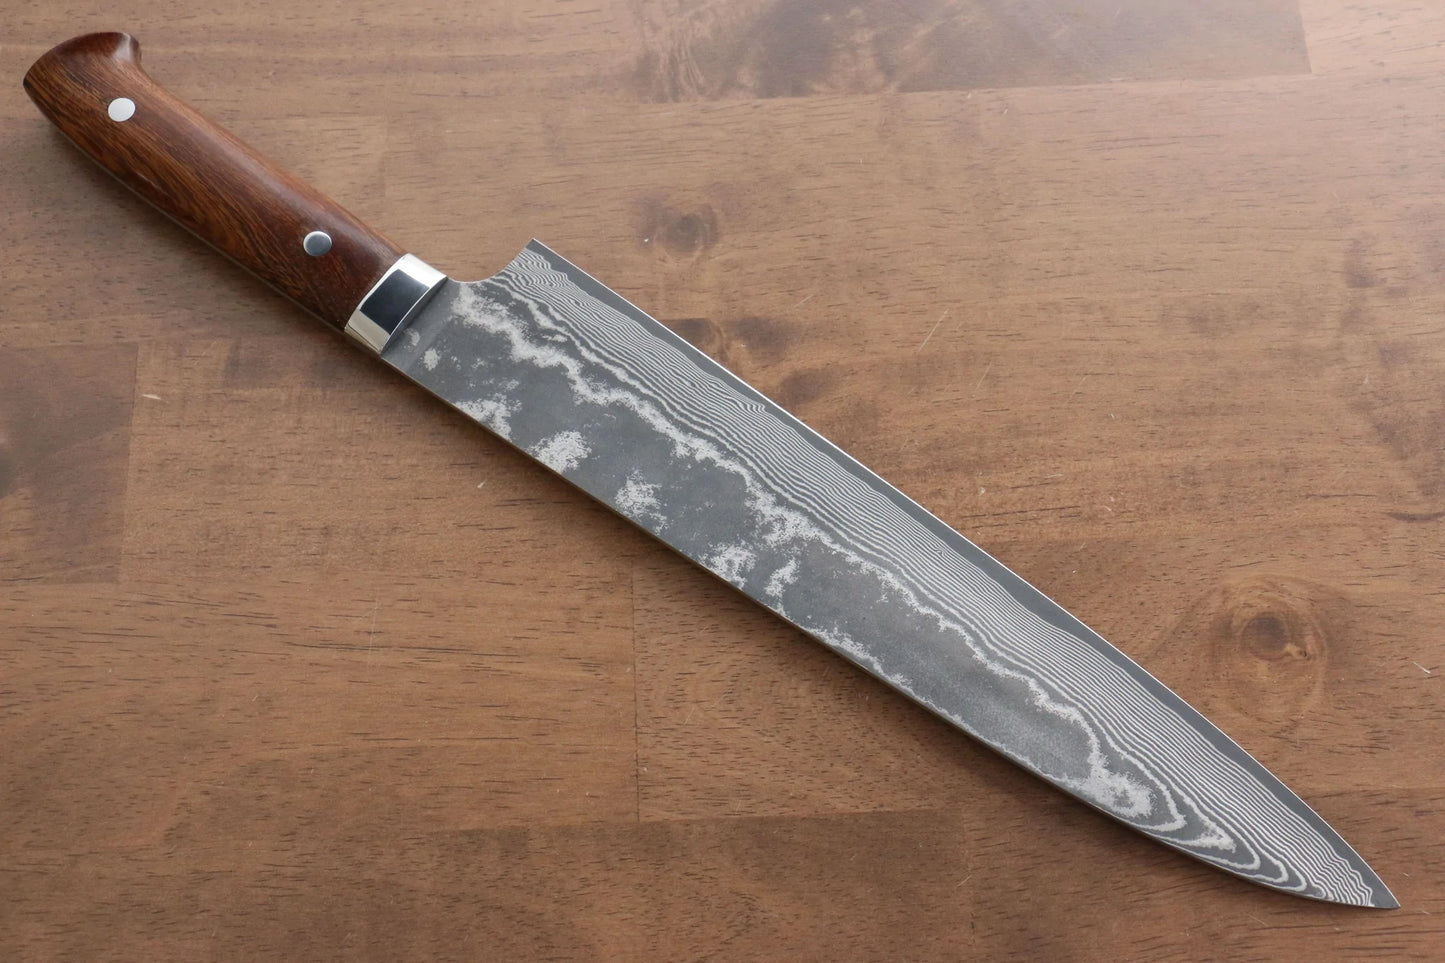 Marke Takeshi Saji R2/SG2 Mehrzweckmesser aus schwarzem Damaststahl, japanisches Gyuto-Messer, 270 mm Griff aus Lim-Holz